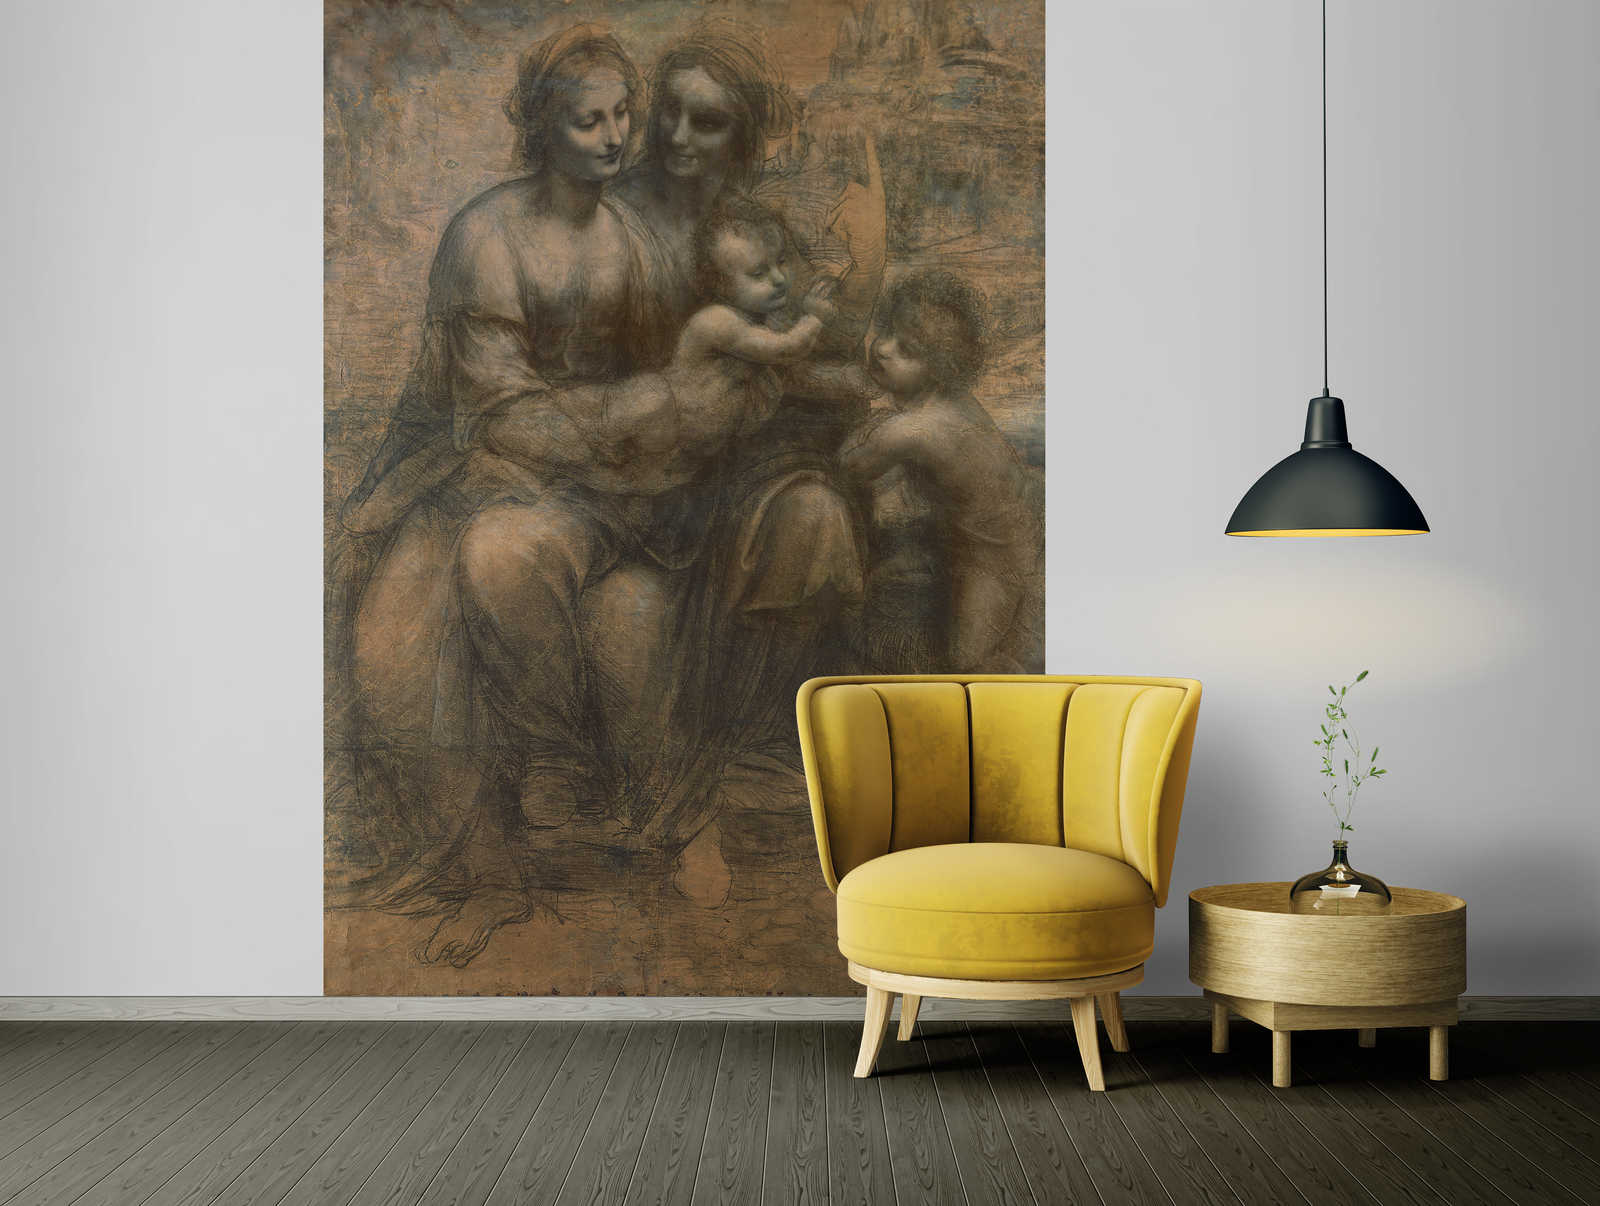             Il murale "La Vergine e il Bambino" di Leonardo da Vinci
        